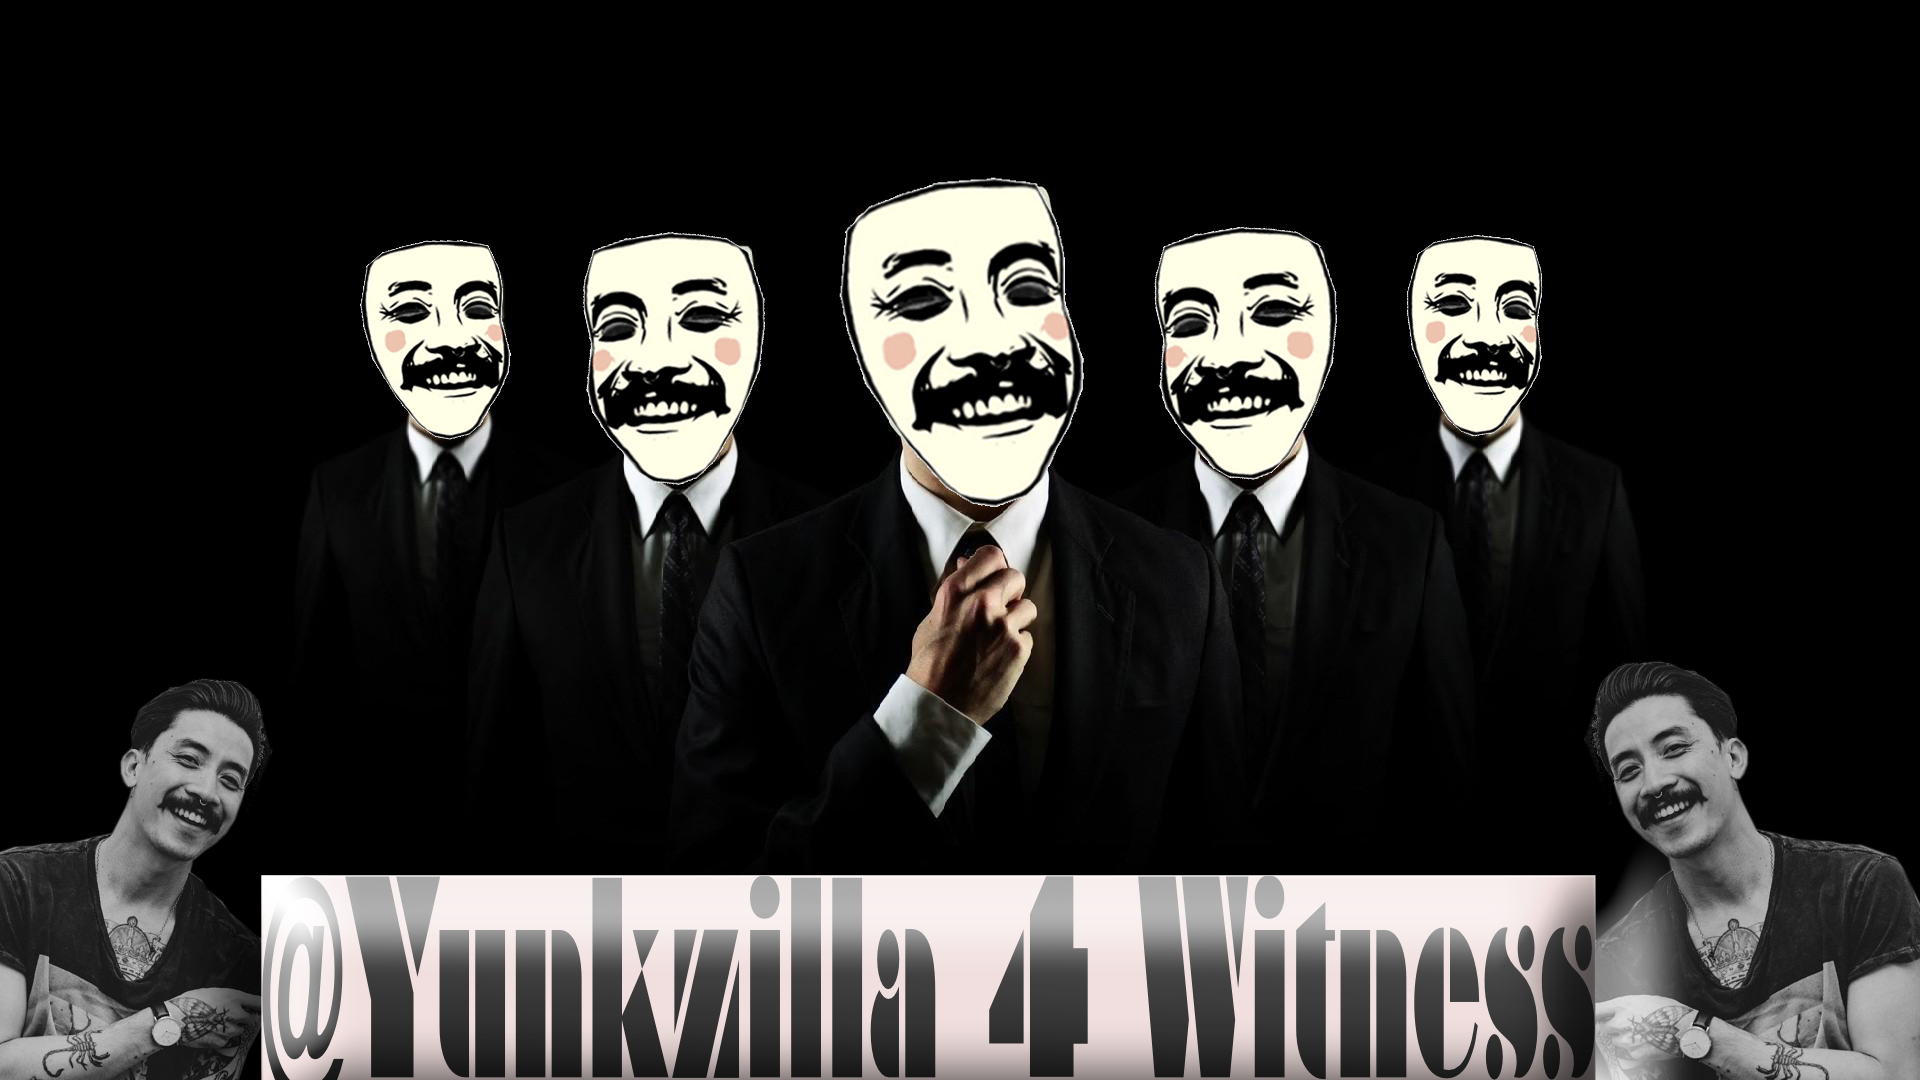 @Yunkzilla 4 Witness.png